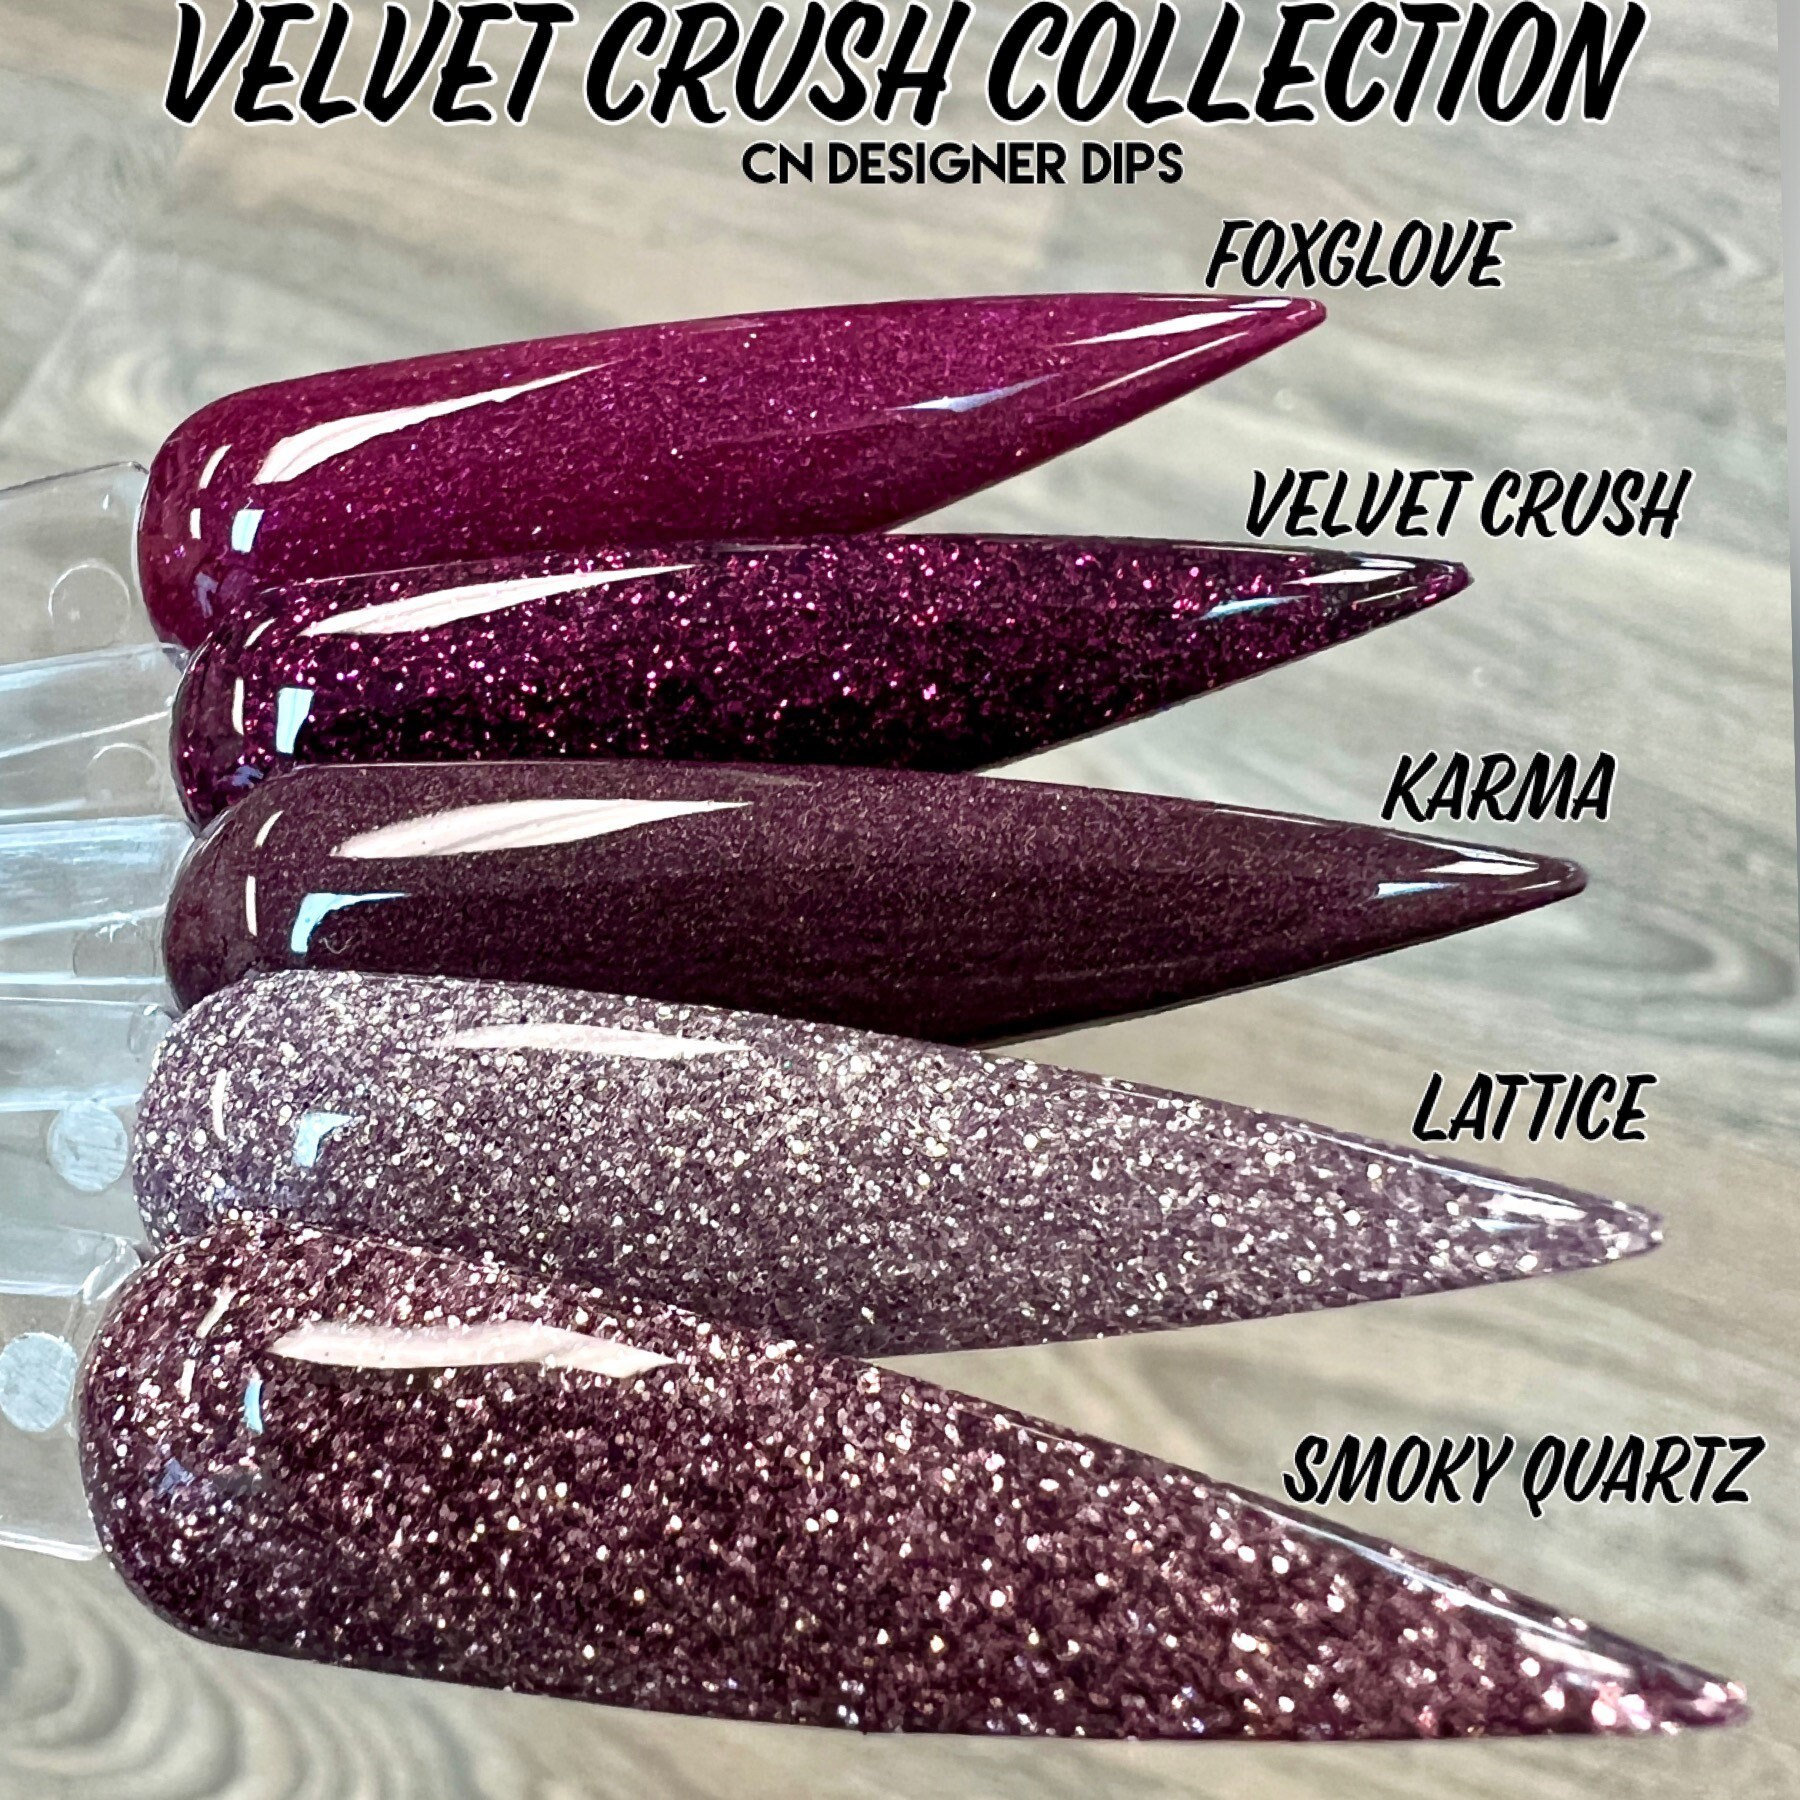 Velvet Crush Collection - Tauchpulver, Nageltauchpulver, Tauchpulver Für Nägel, Nagelpulver, Acryl, Nageldip, Nagelacryl von Etsy - CNDesignerDips